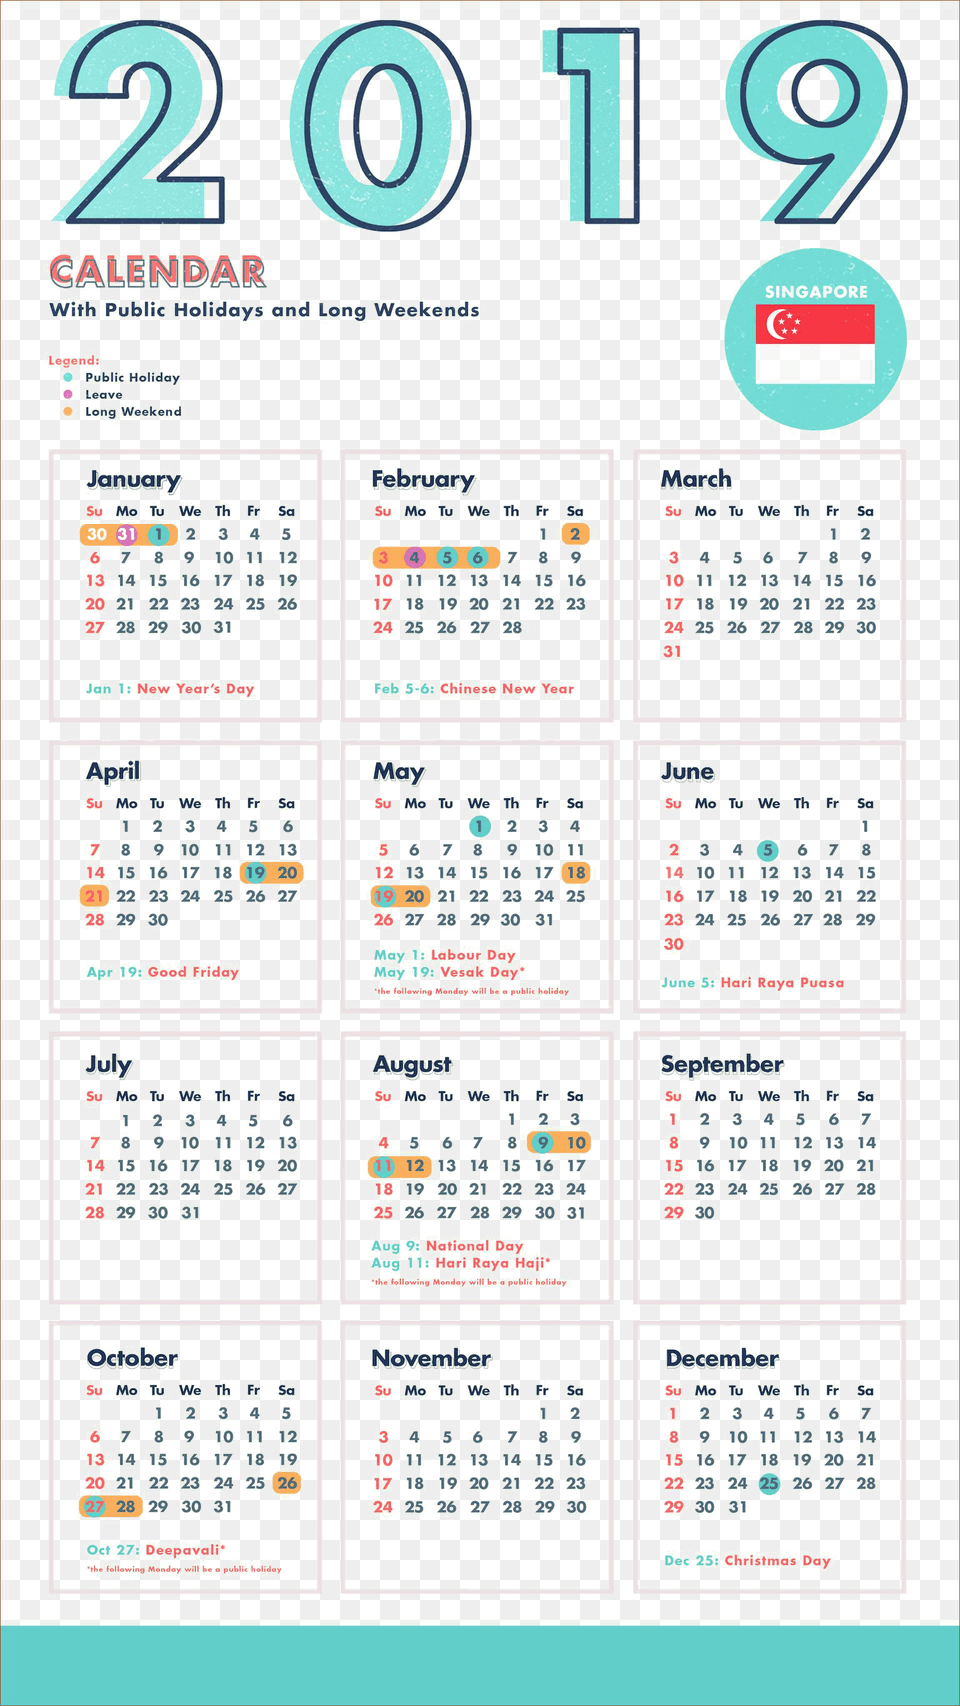 2019 Indian Calendar Pics Images Singapore Calendar 2019 Holiday, Text Free Transparent Png